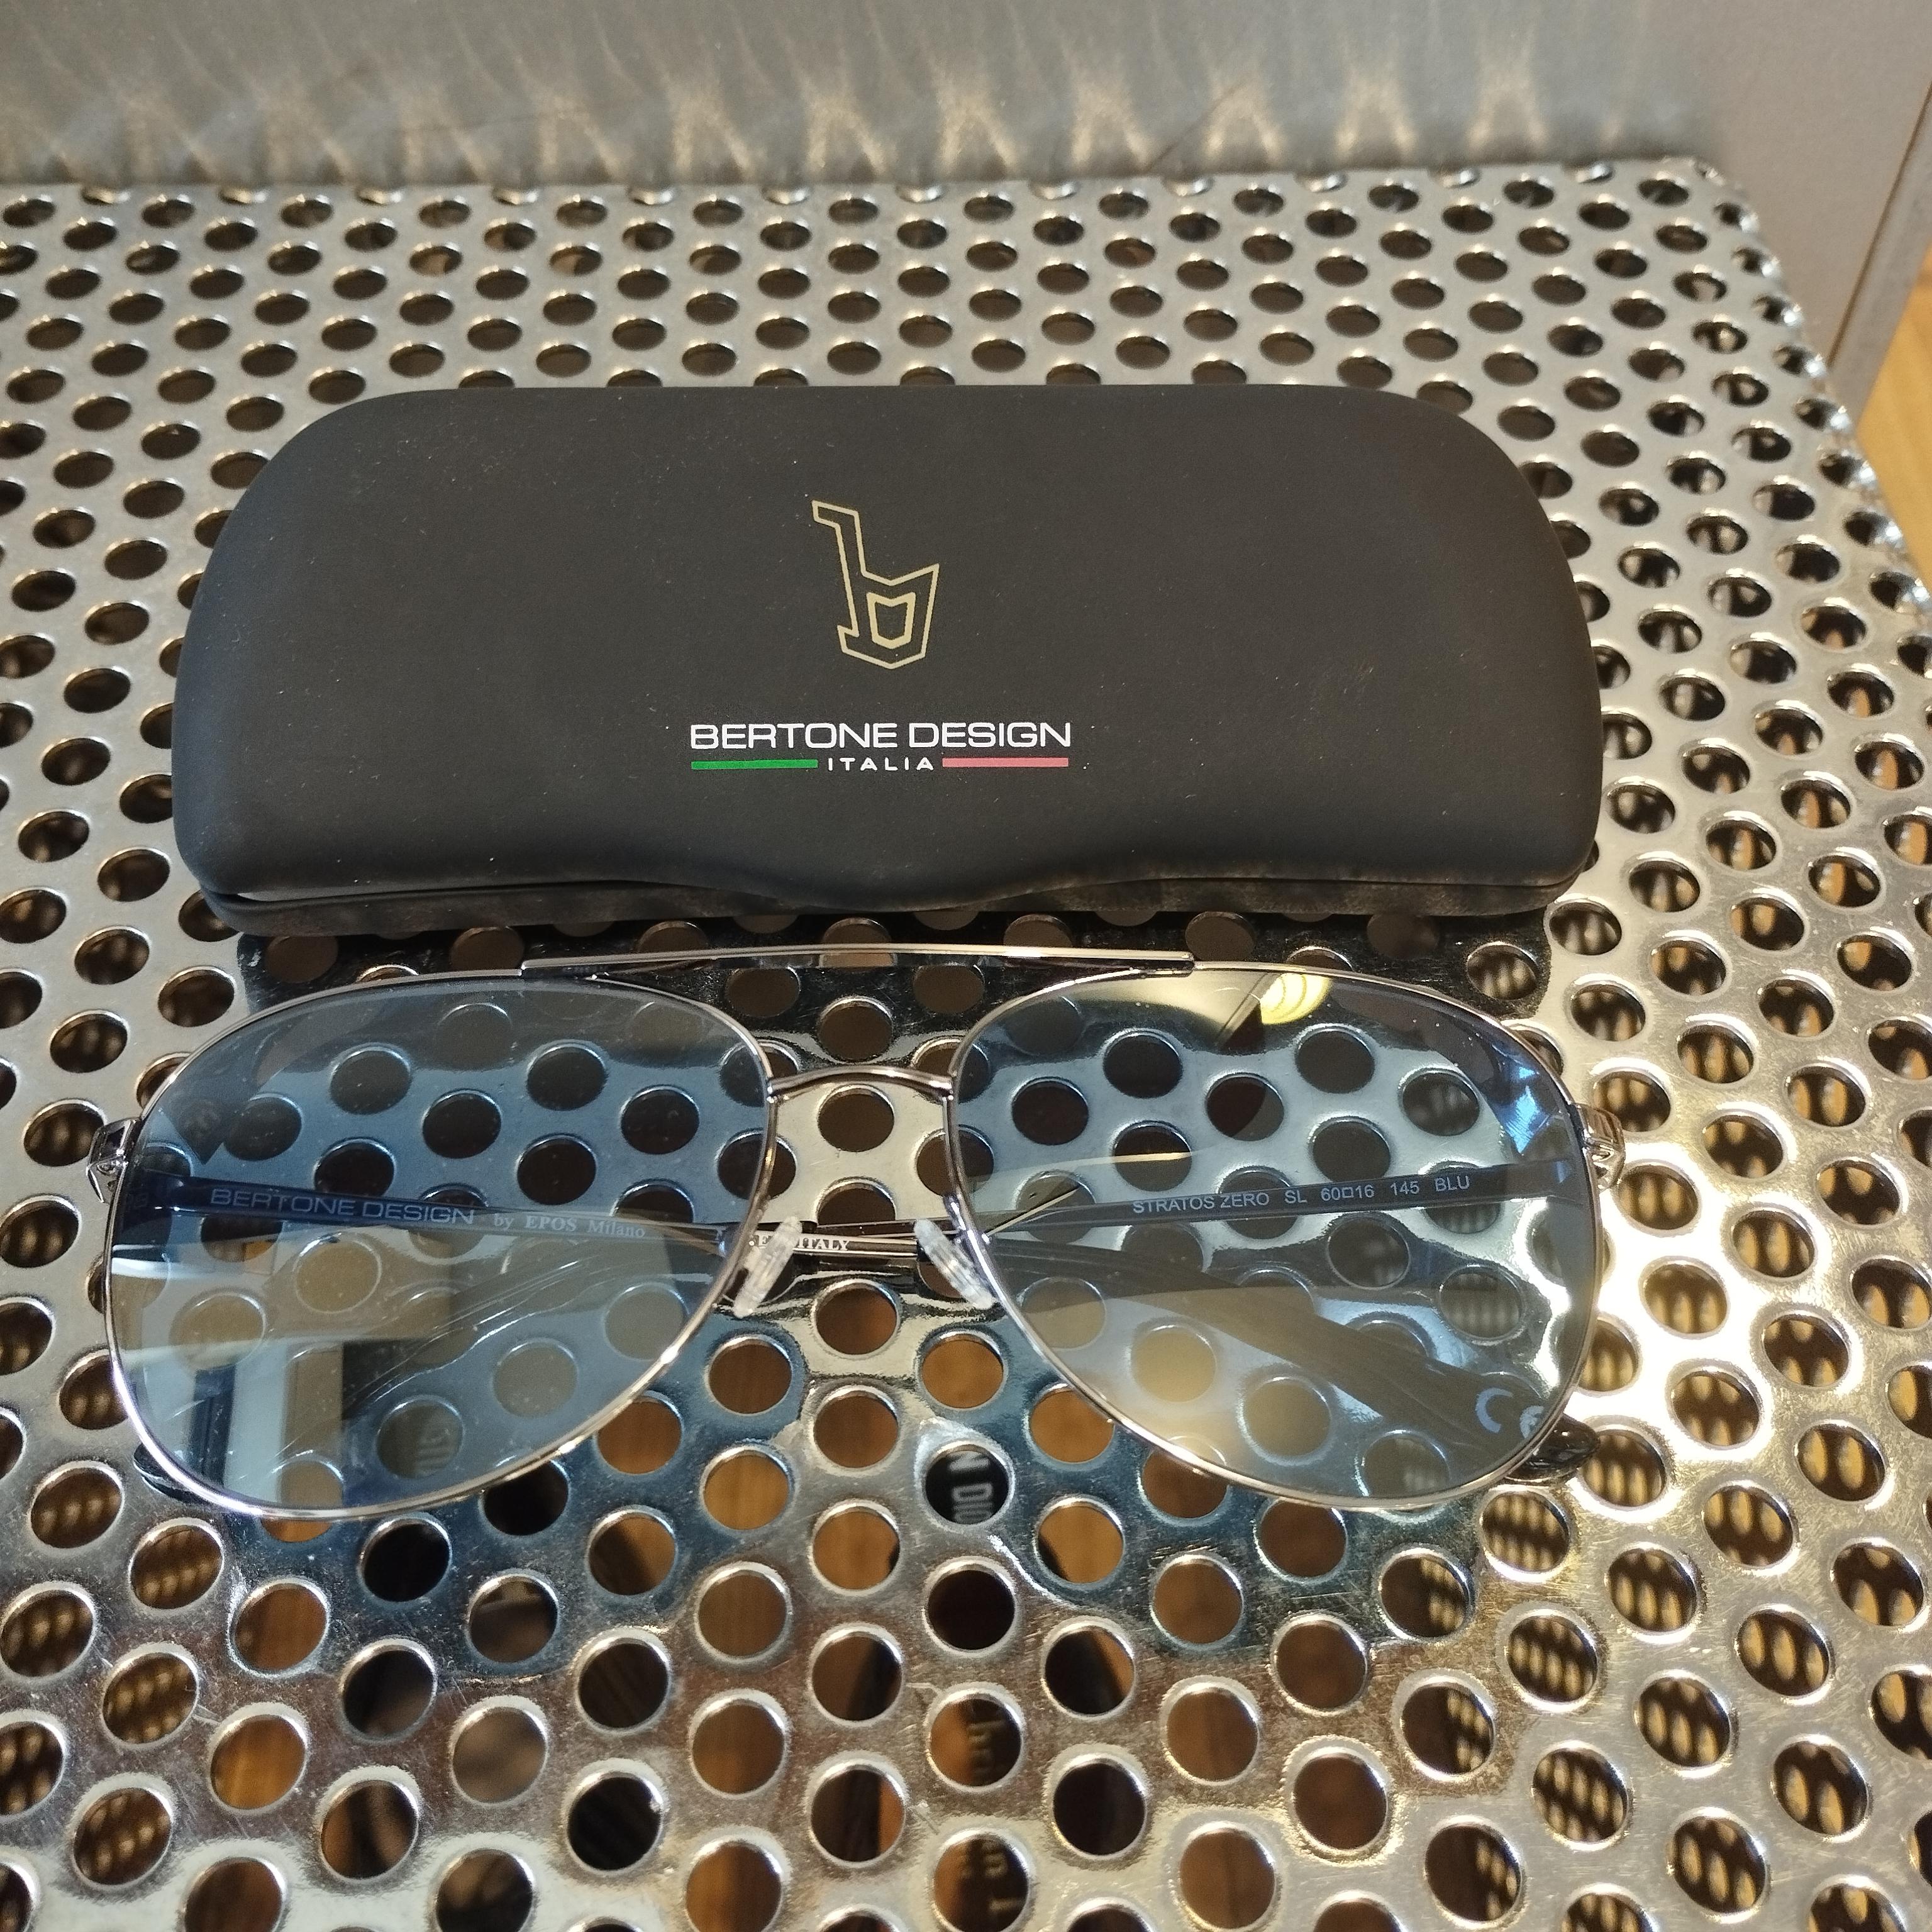 Bertone Design Stratos Zero Limited Edition Sunglasses In Excellent Condition In Gazzaniga (BG), IT